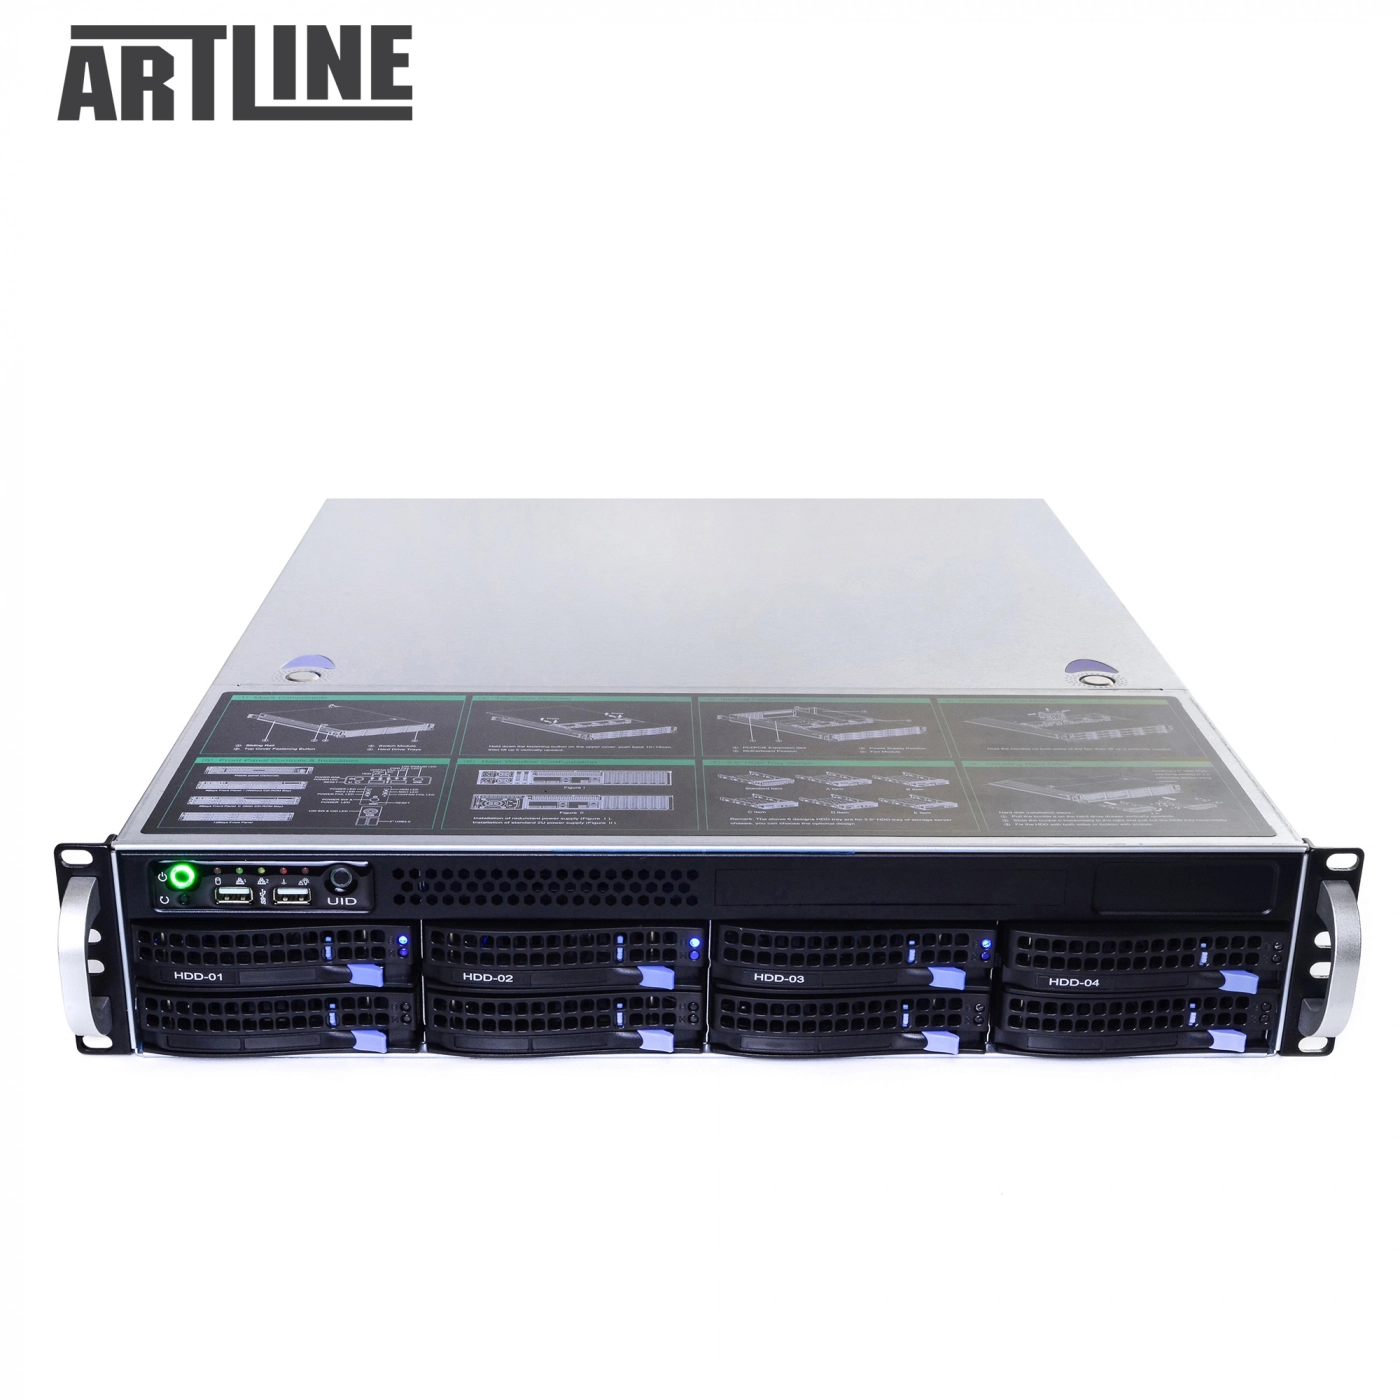 Купить Сервер ARTLINE Business R35v31 - фото 10